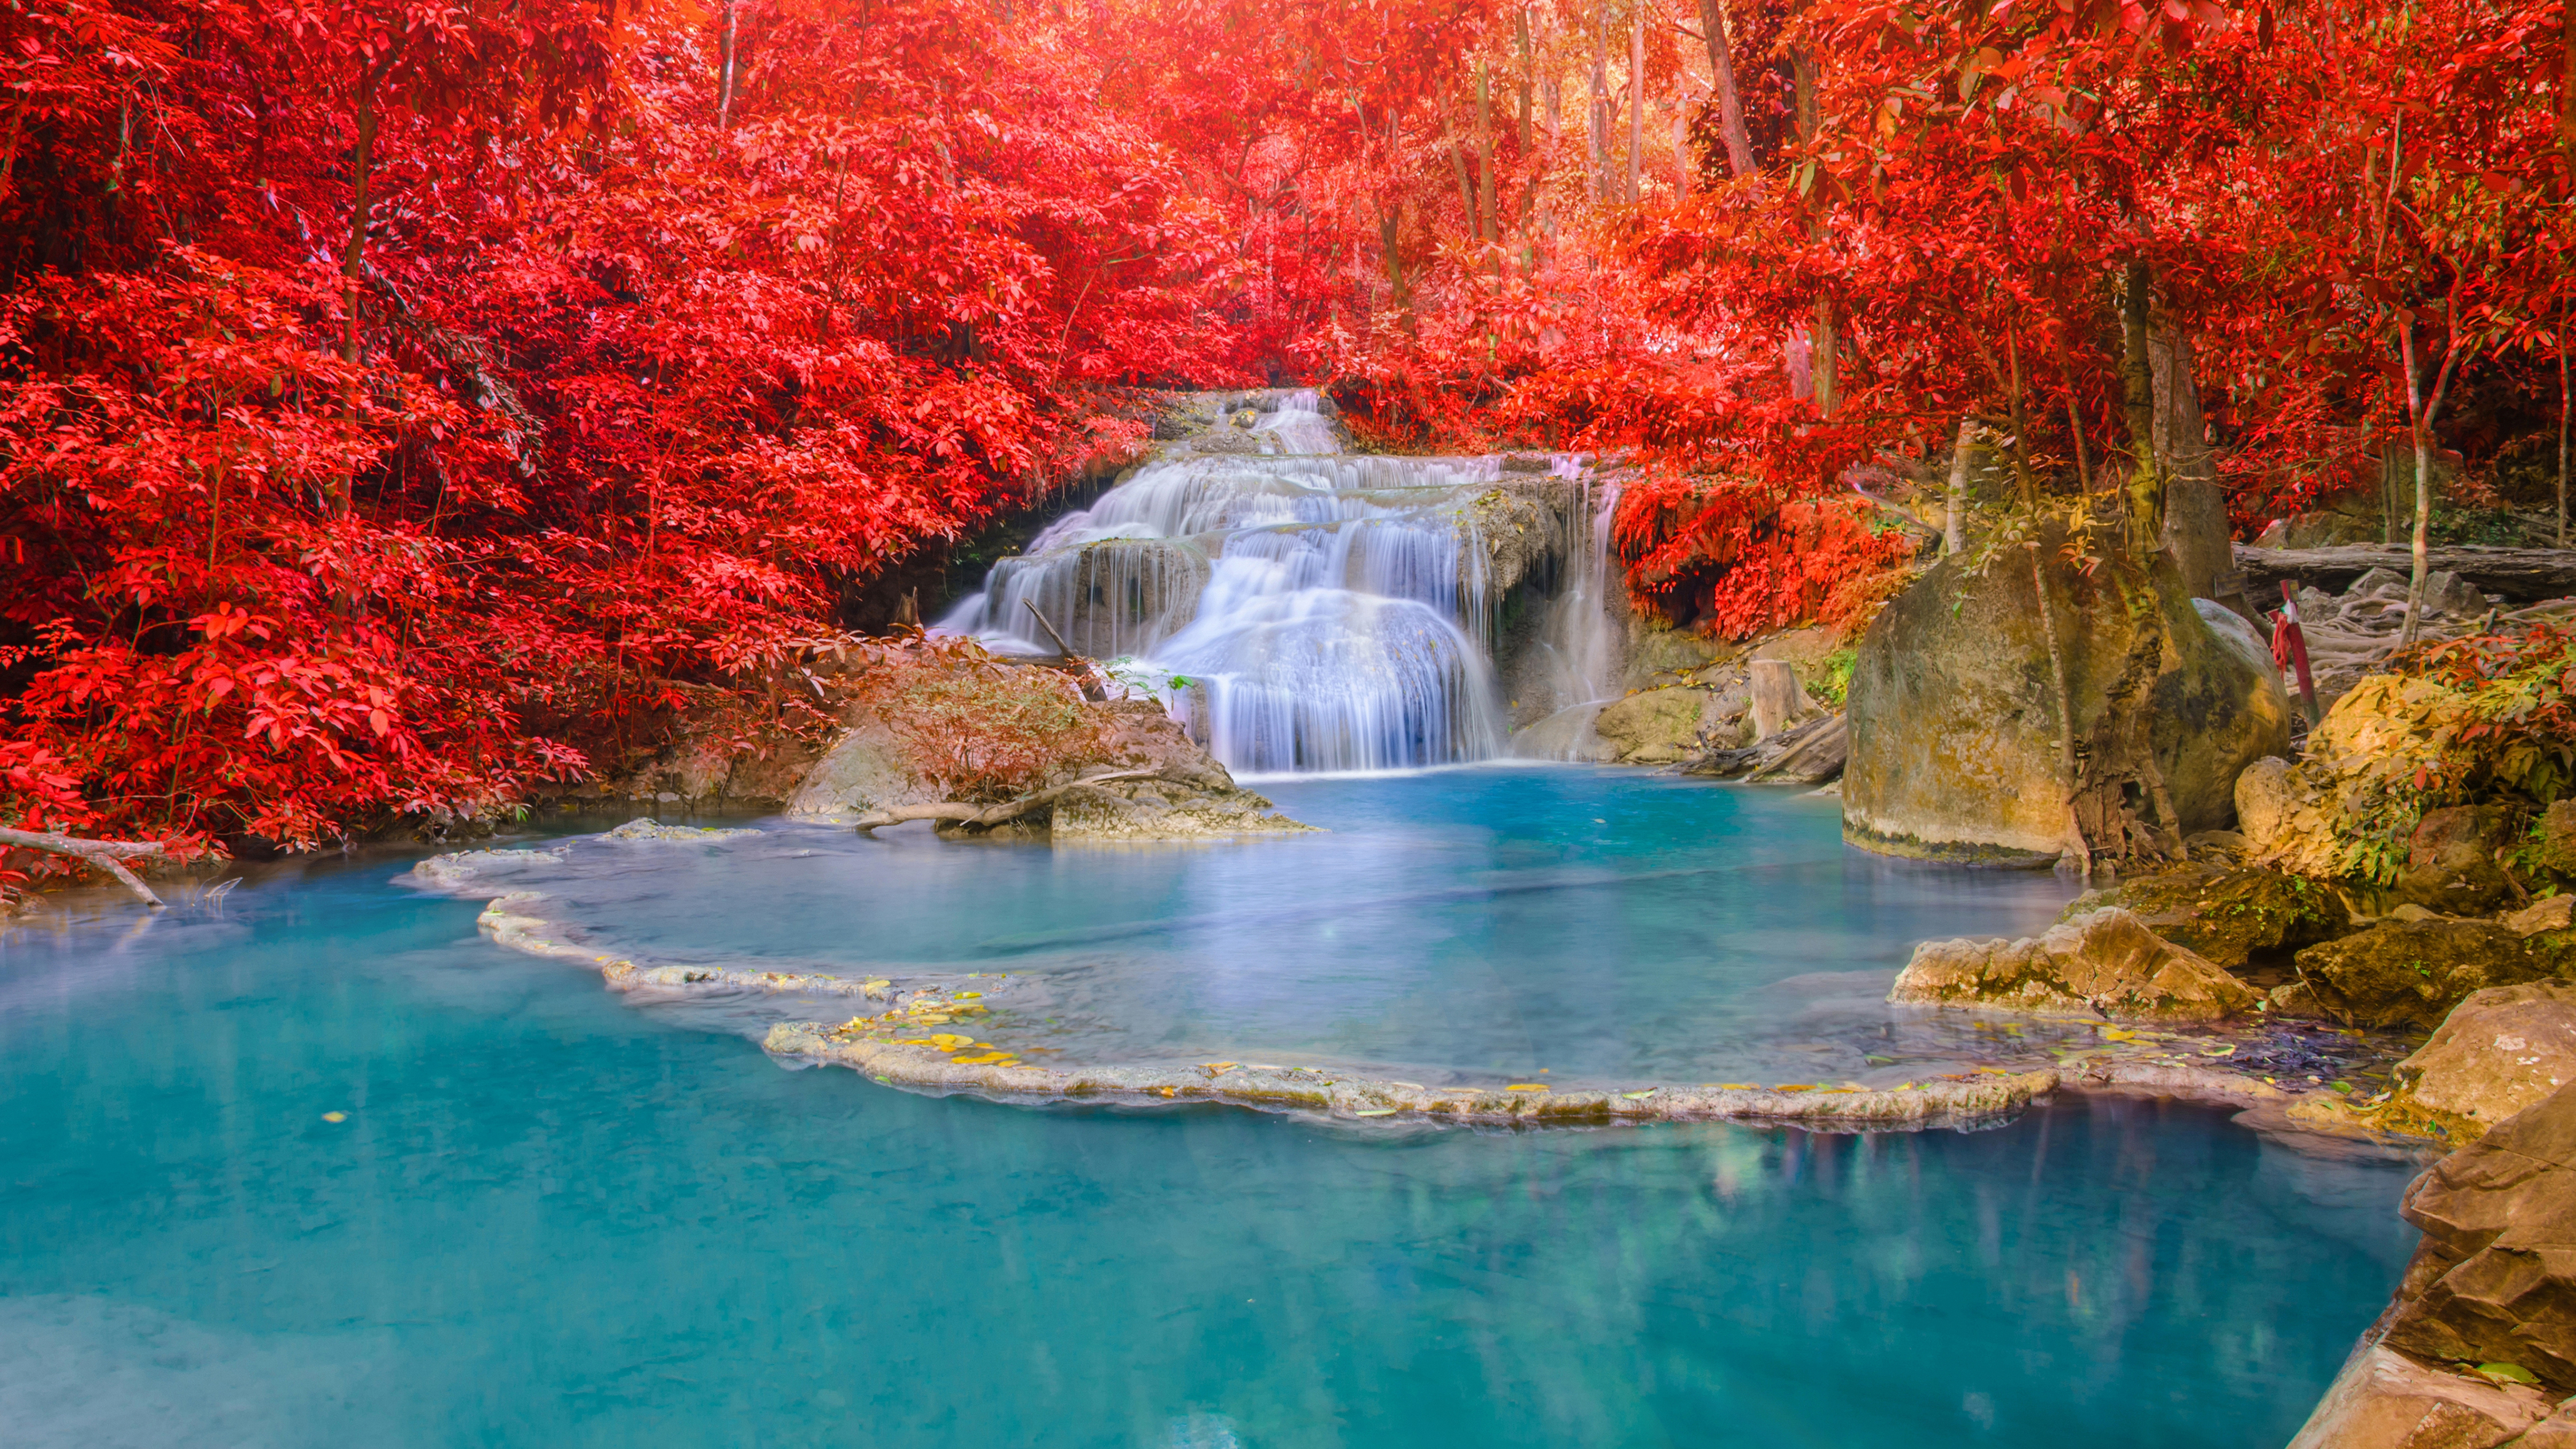 8К, пейзаж, водопад, осень, камни, красные листья, landscape, waterfall, autumn, stones, red leaves